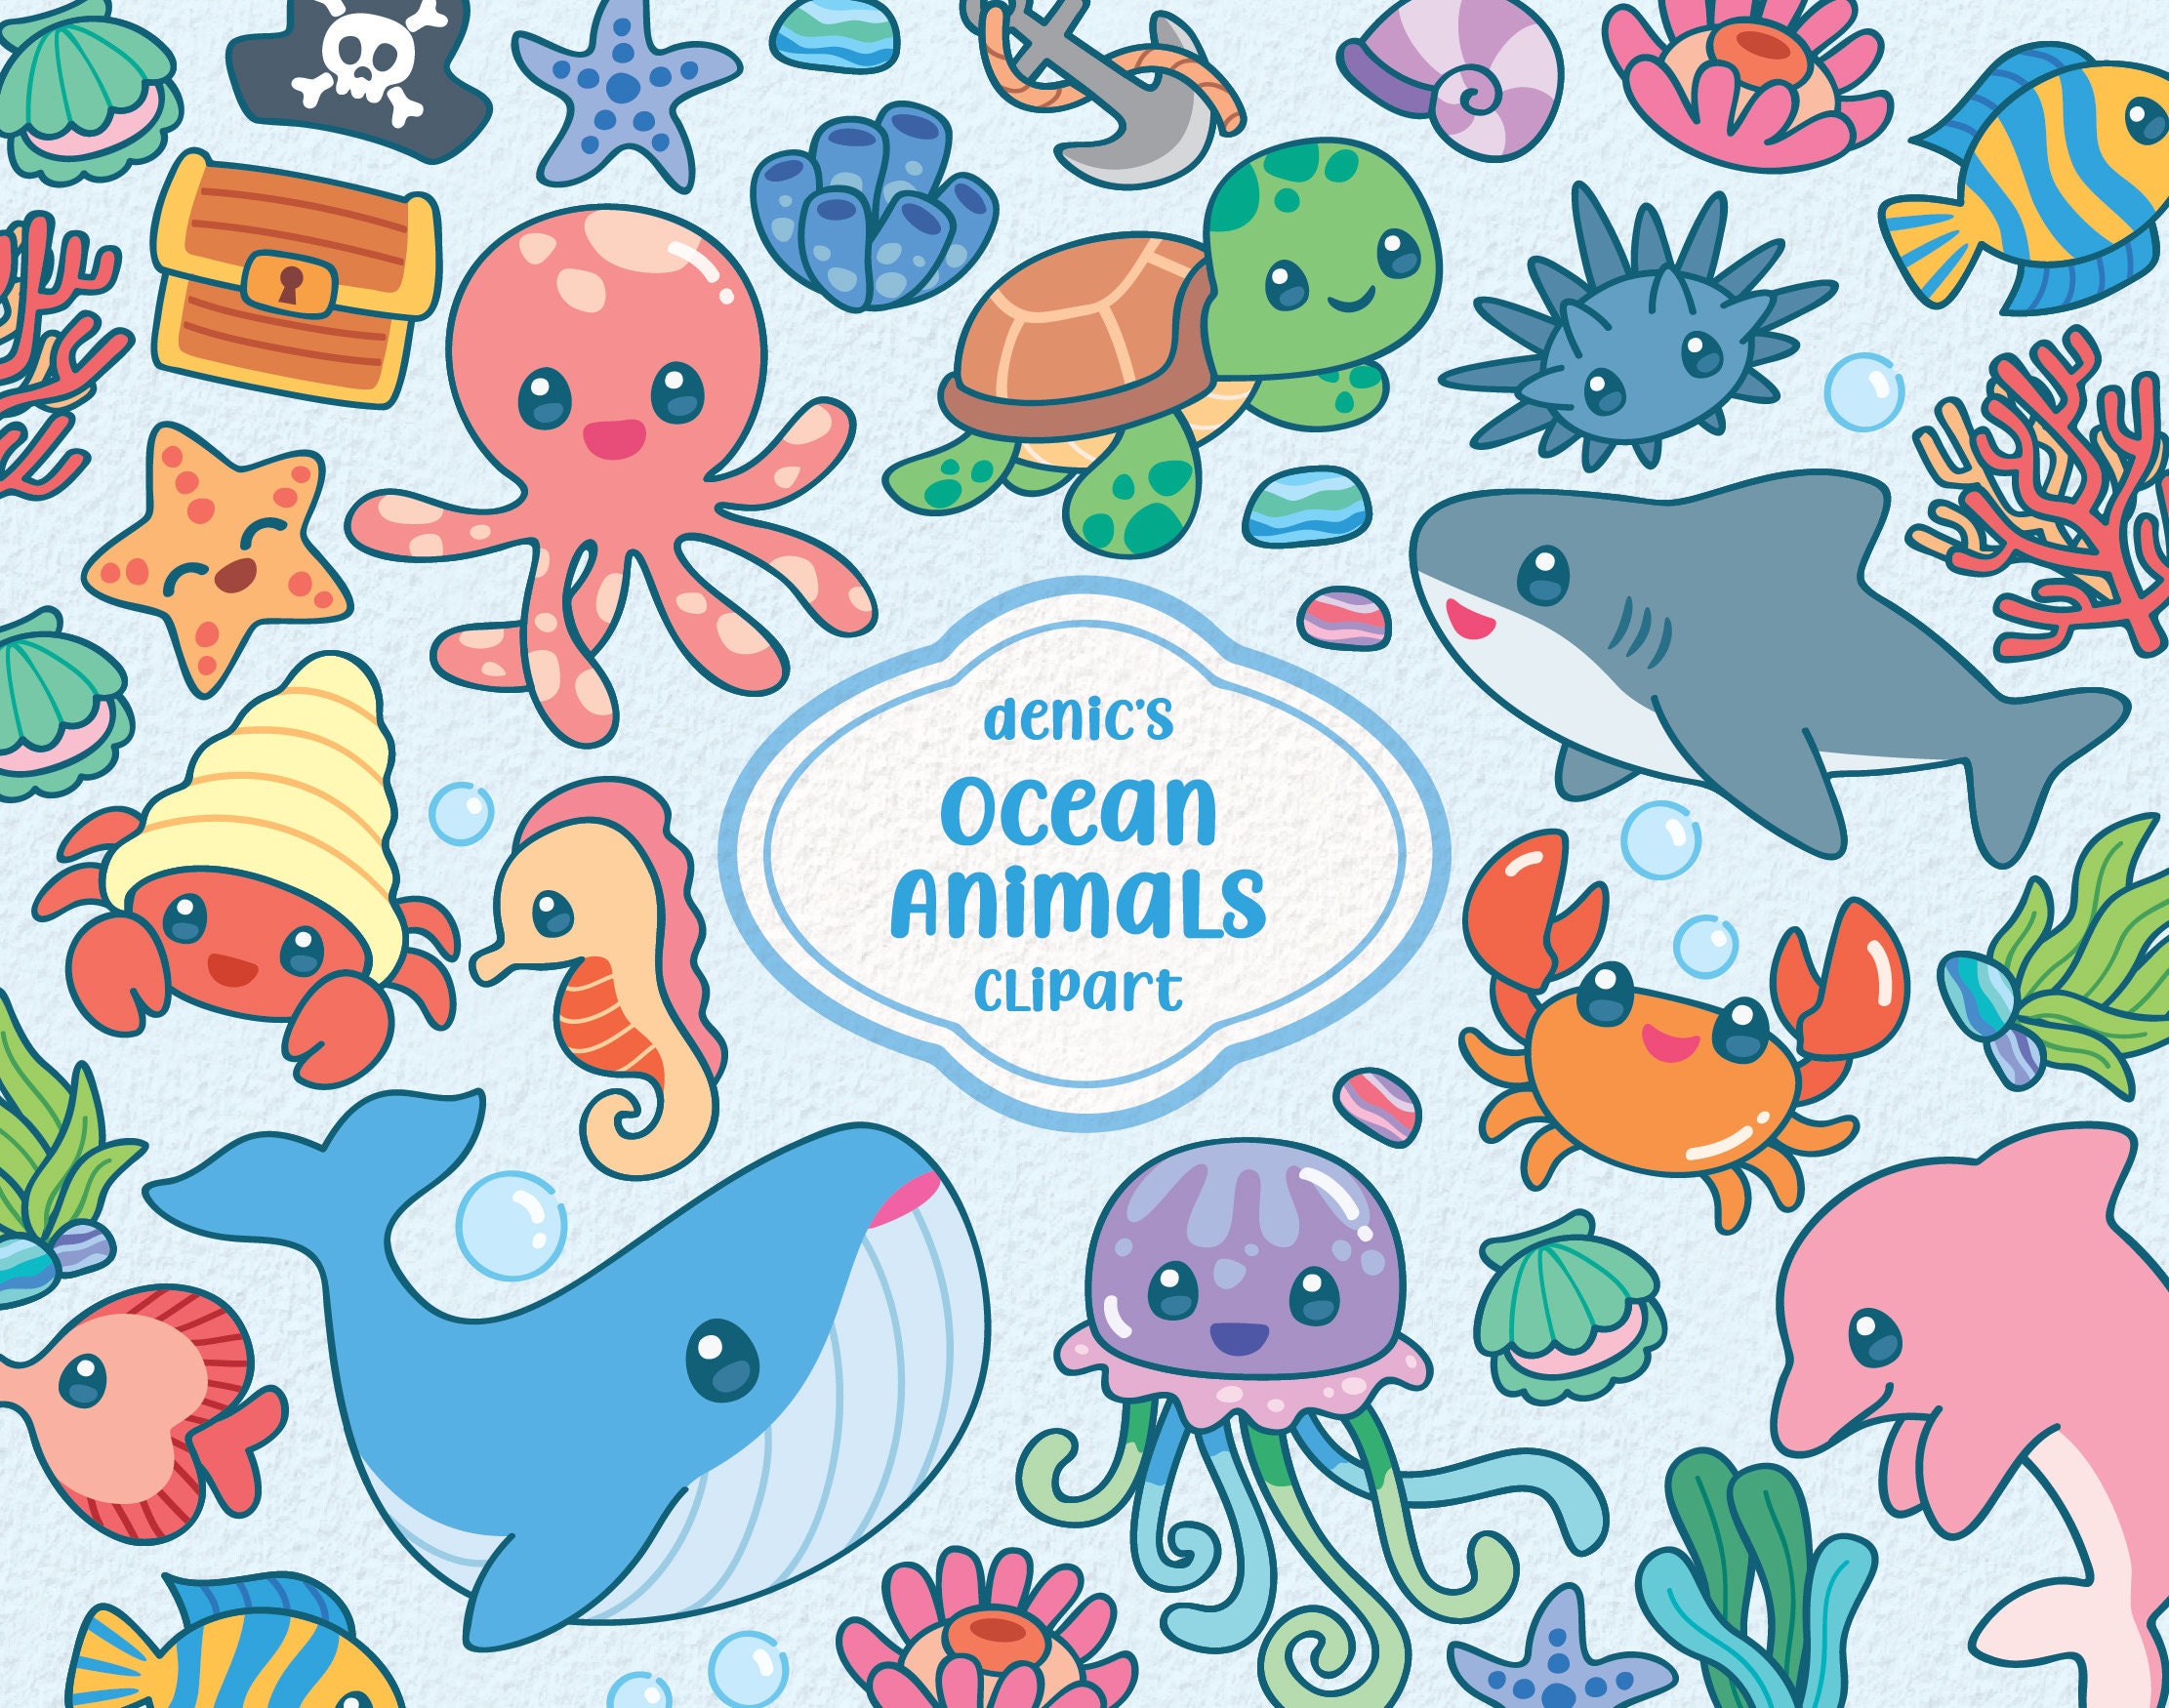 Ocean Animals Clipart, Sea Creatures, Kawaii Mermaid Friends, Cute